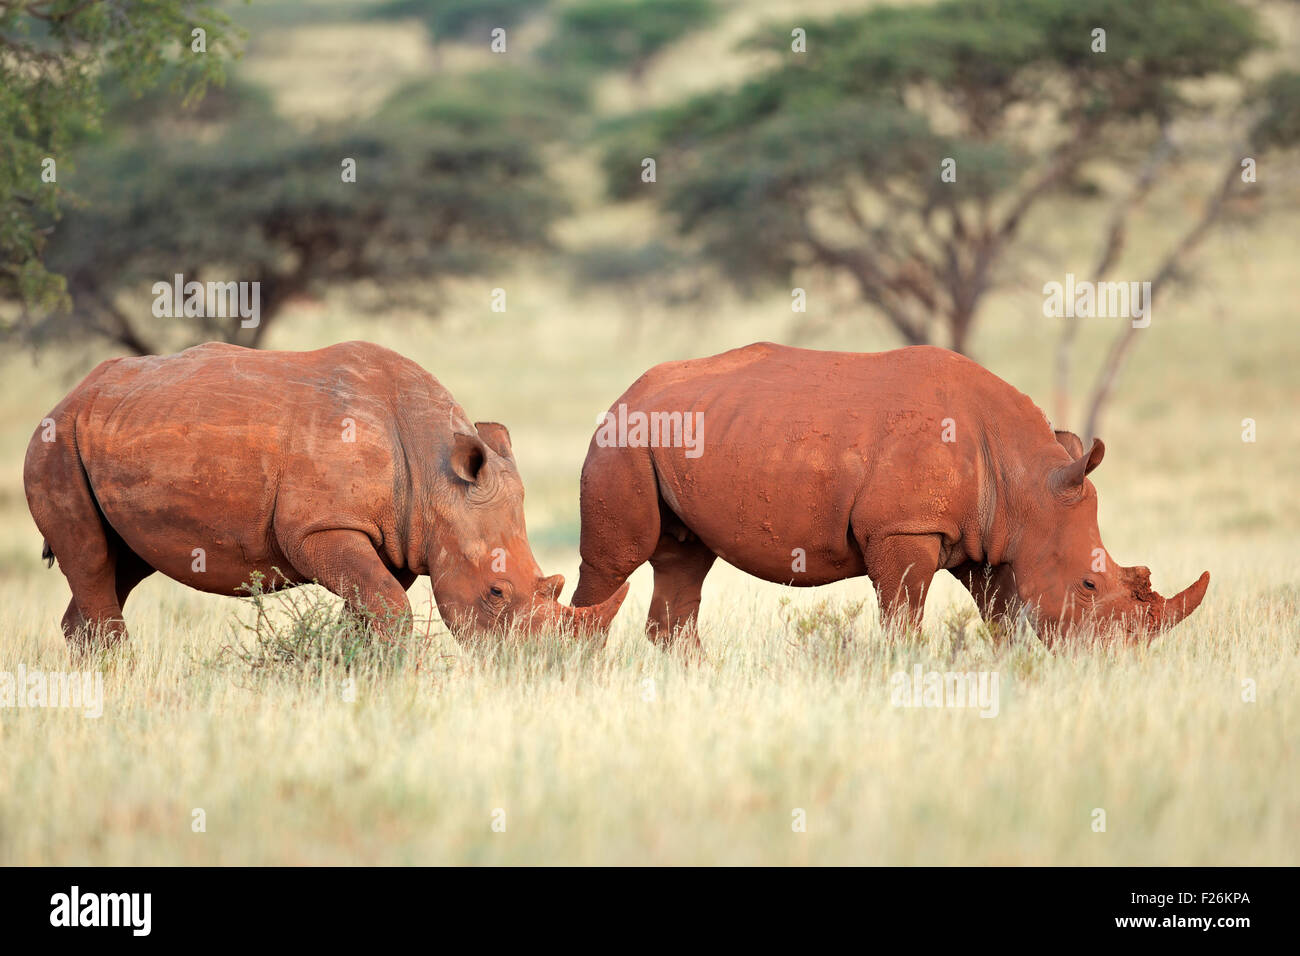 A pair of white rhinoceros (Ceratotherium simum) in natural habitat, South Africa Stock Photo